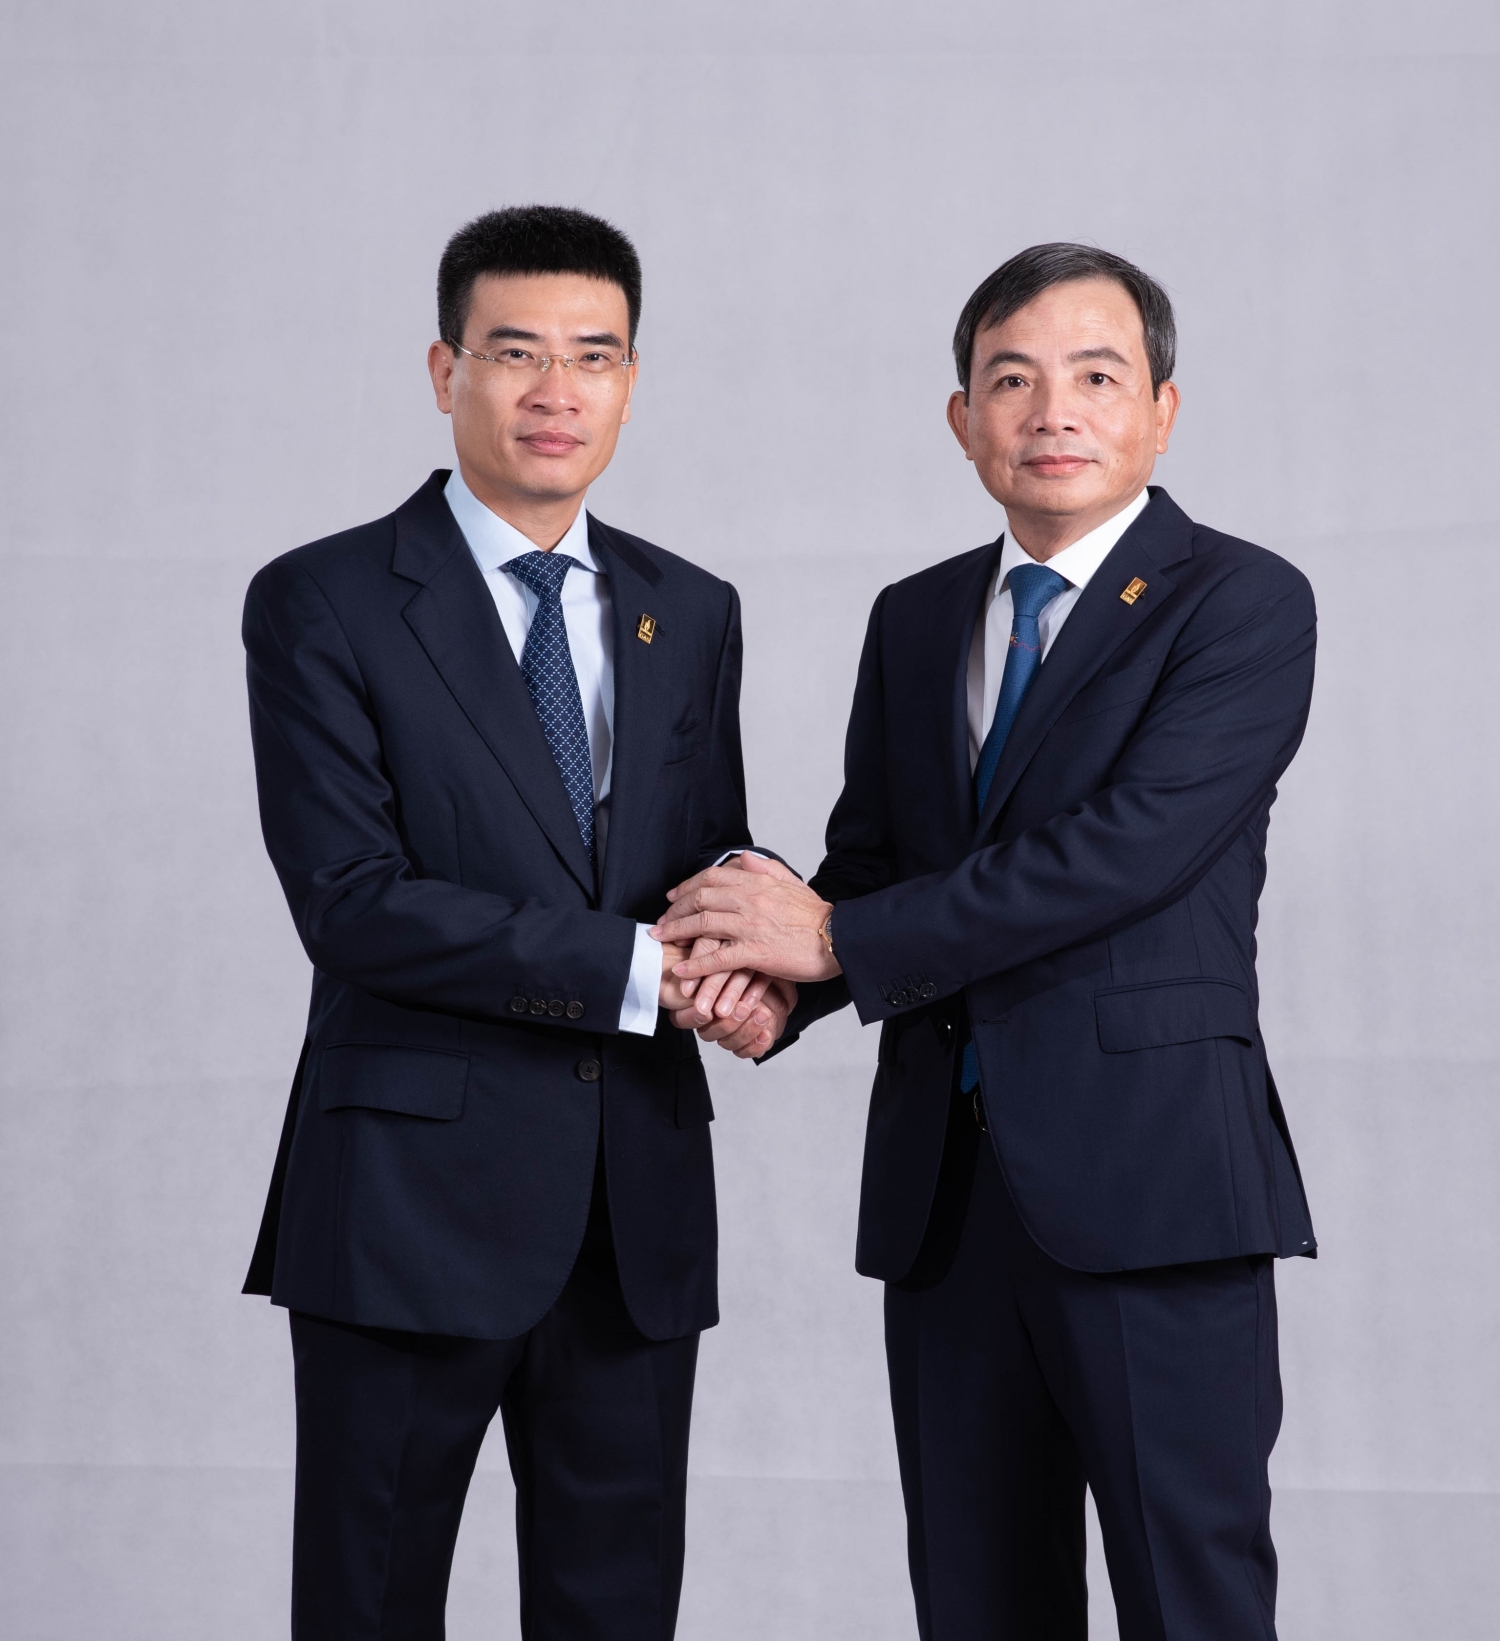 Ông Nguyễn Sinh Khang và Ông Dương Mạnh Sơn đồng tâm hiệp lực, thực hiện chỉ đạo thắng lợi sự nghiệp phát triển PV GAS giai đoạn 2018-2021